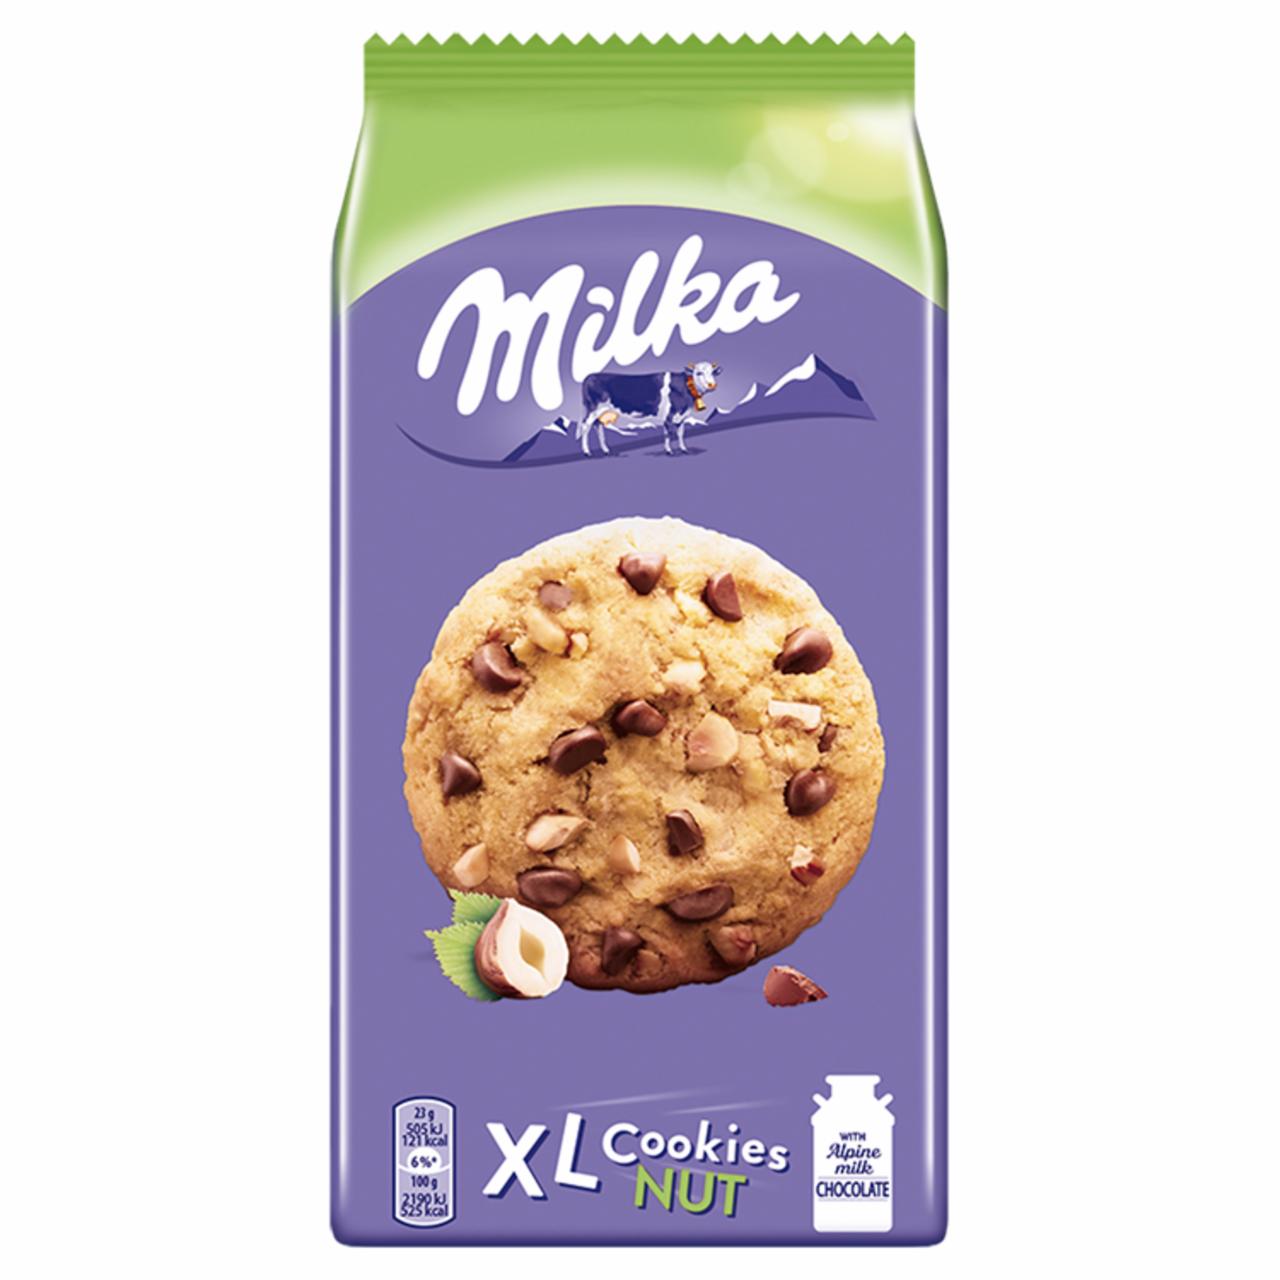 Zdjęcia - Milka XL Cookies Nuts Ciastka z kawałkami czekolady mlecznej i orzechami 184 g